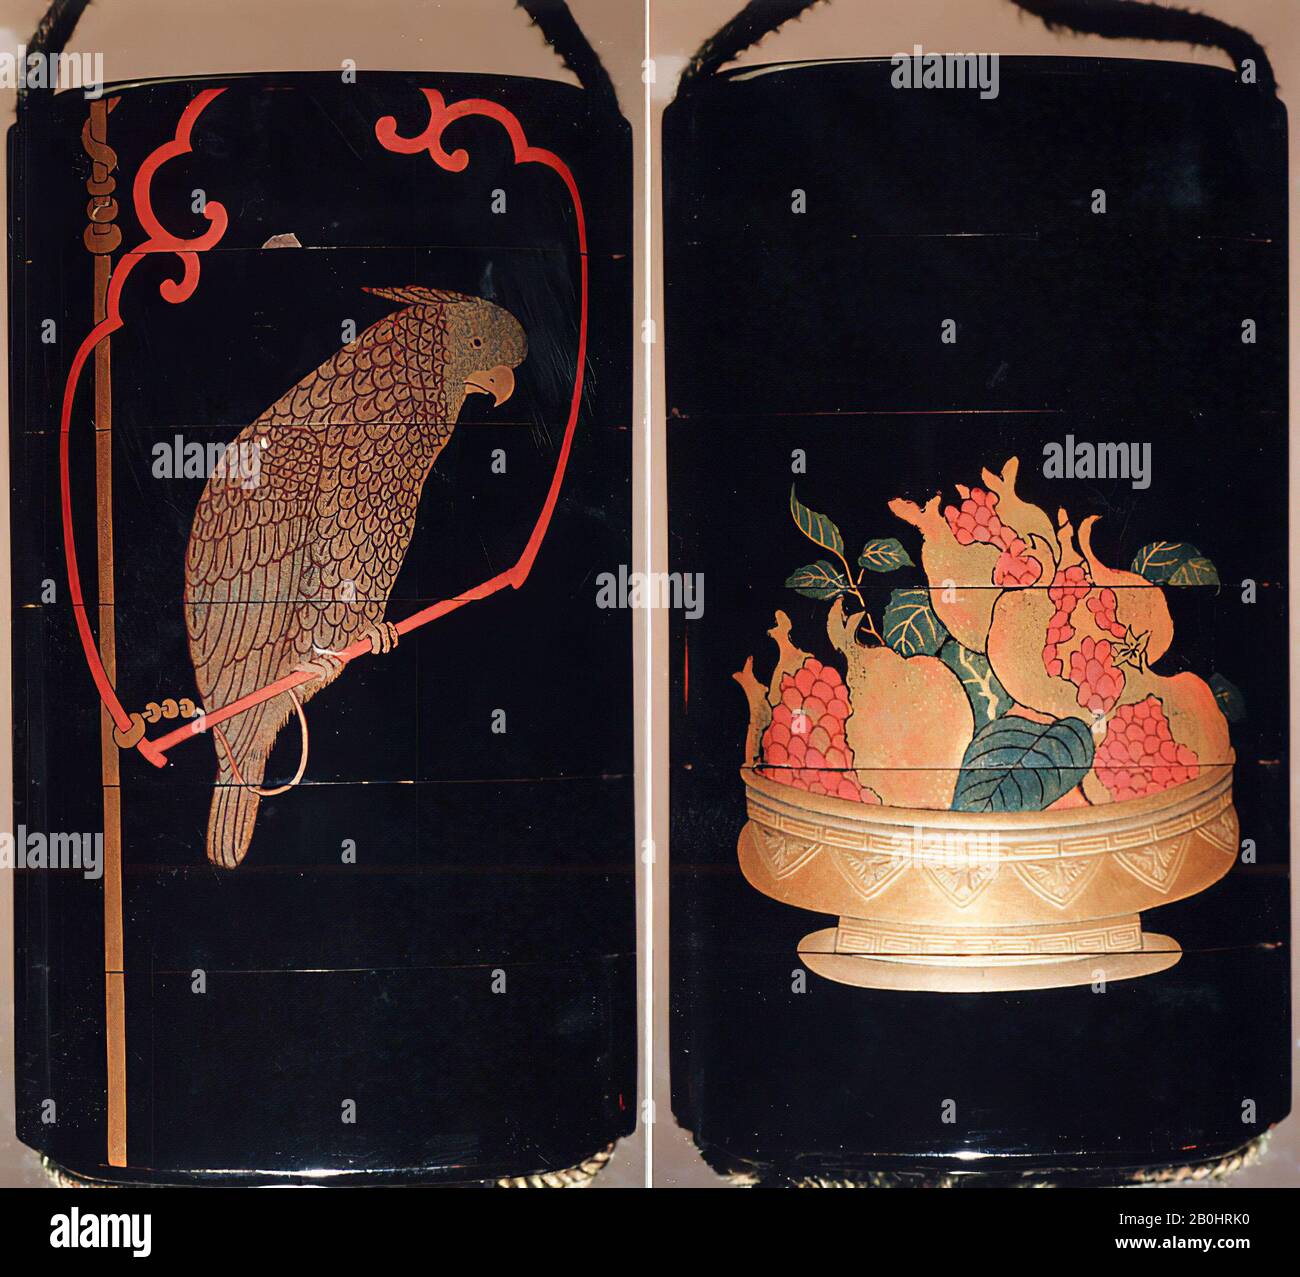 Tasche (Inrō) mit Design von Papagei auf Swing (obverse) Korb mit Granatäpfchen (rückwärts), Japan, Edo-Zeit (1615-1868), Datum 18.-19. Jahrhundert, Japan, Lack, Roiro, Gold, Silber und farbiges Togidashi; innen: Nashiji und Fungame, 3 5/8 x 2 1/16 x 1 1/16 Zoll (9,2 x 5,3 x 2,7 cm), Inrō Stockfoto